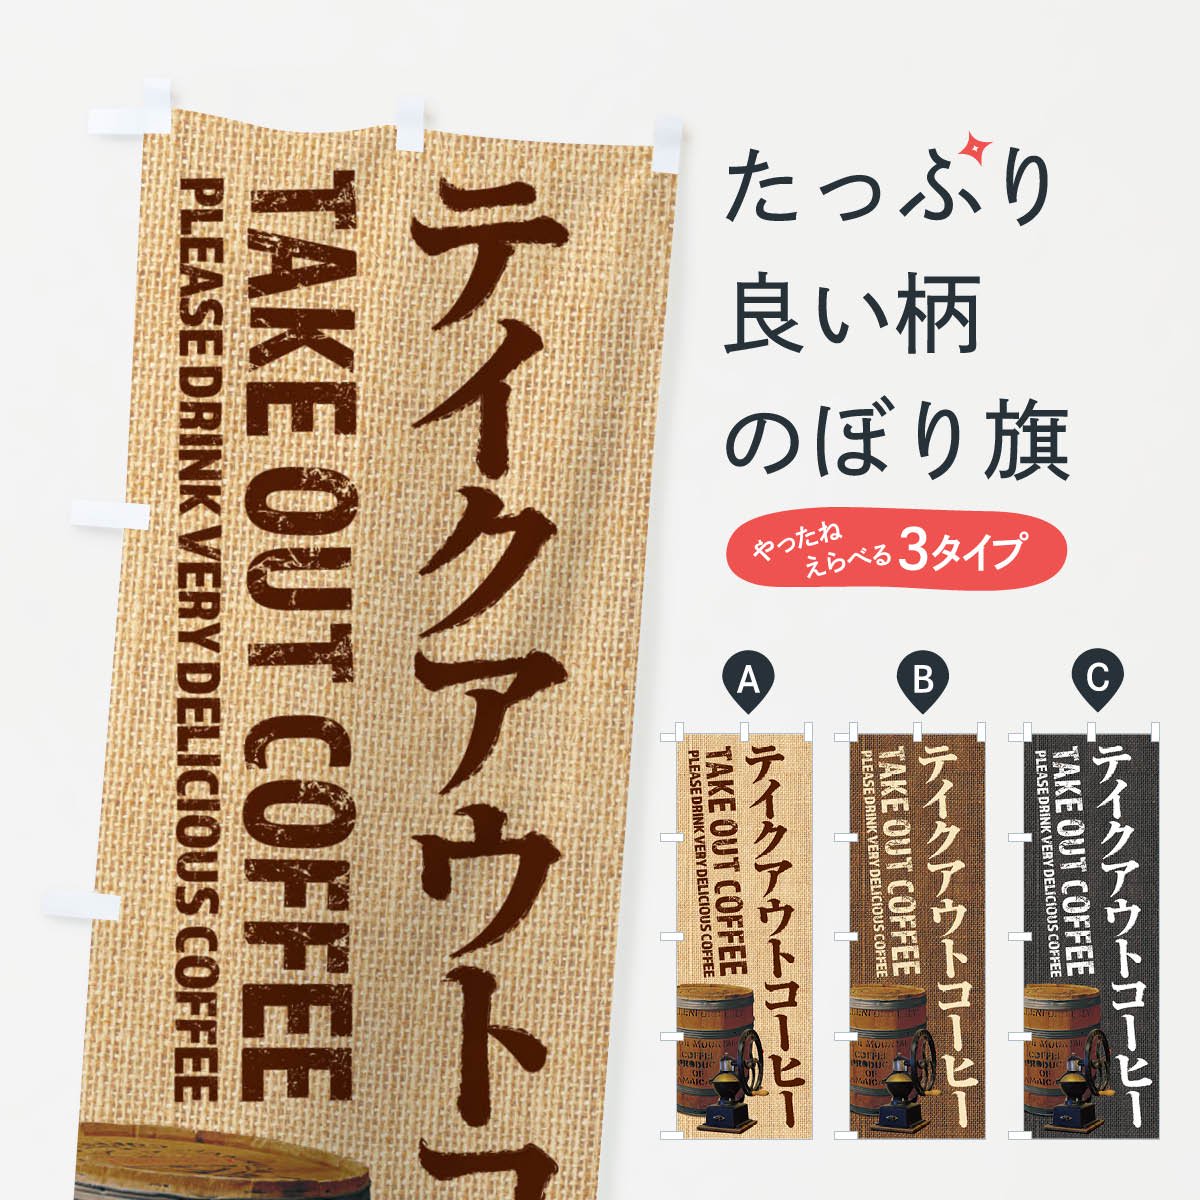 のぼり旗 3枚セット Iced Coffee SKE-1342 - 店舗用品